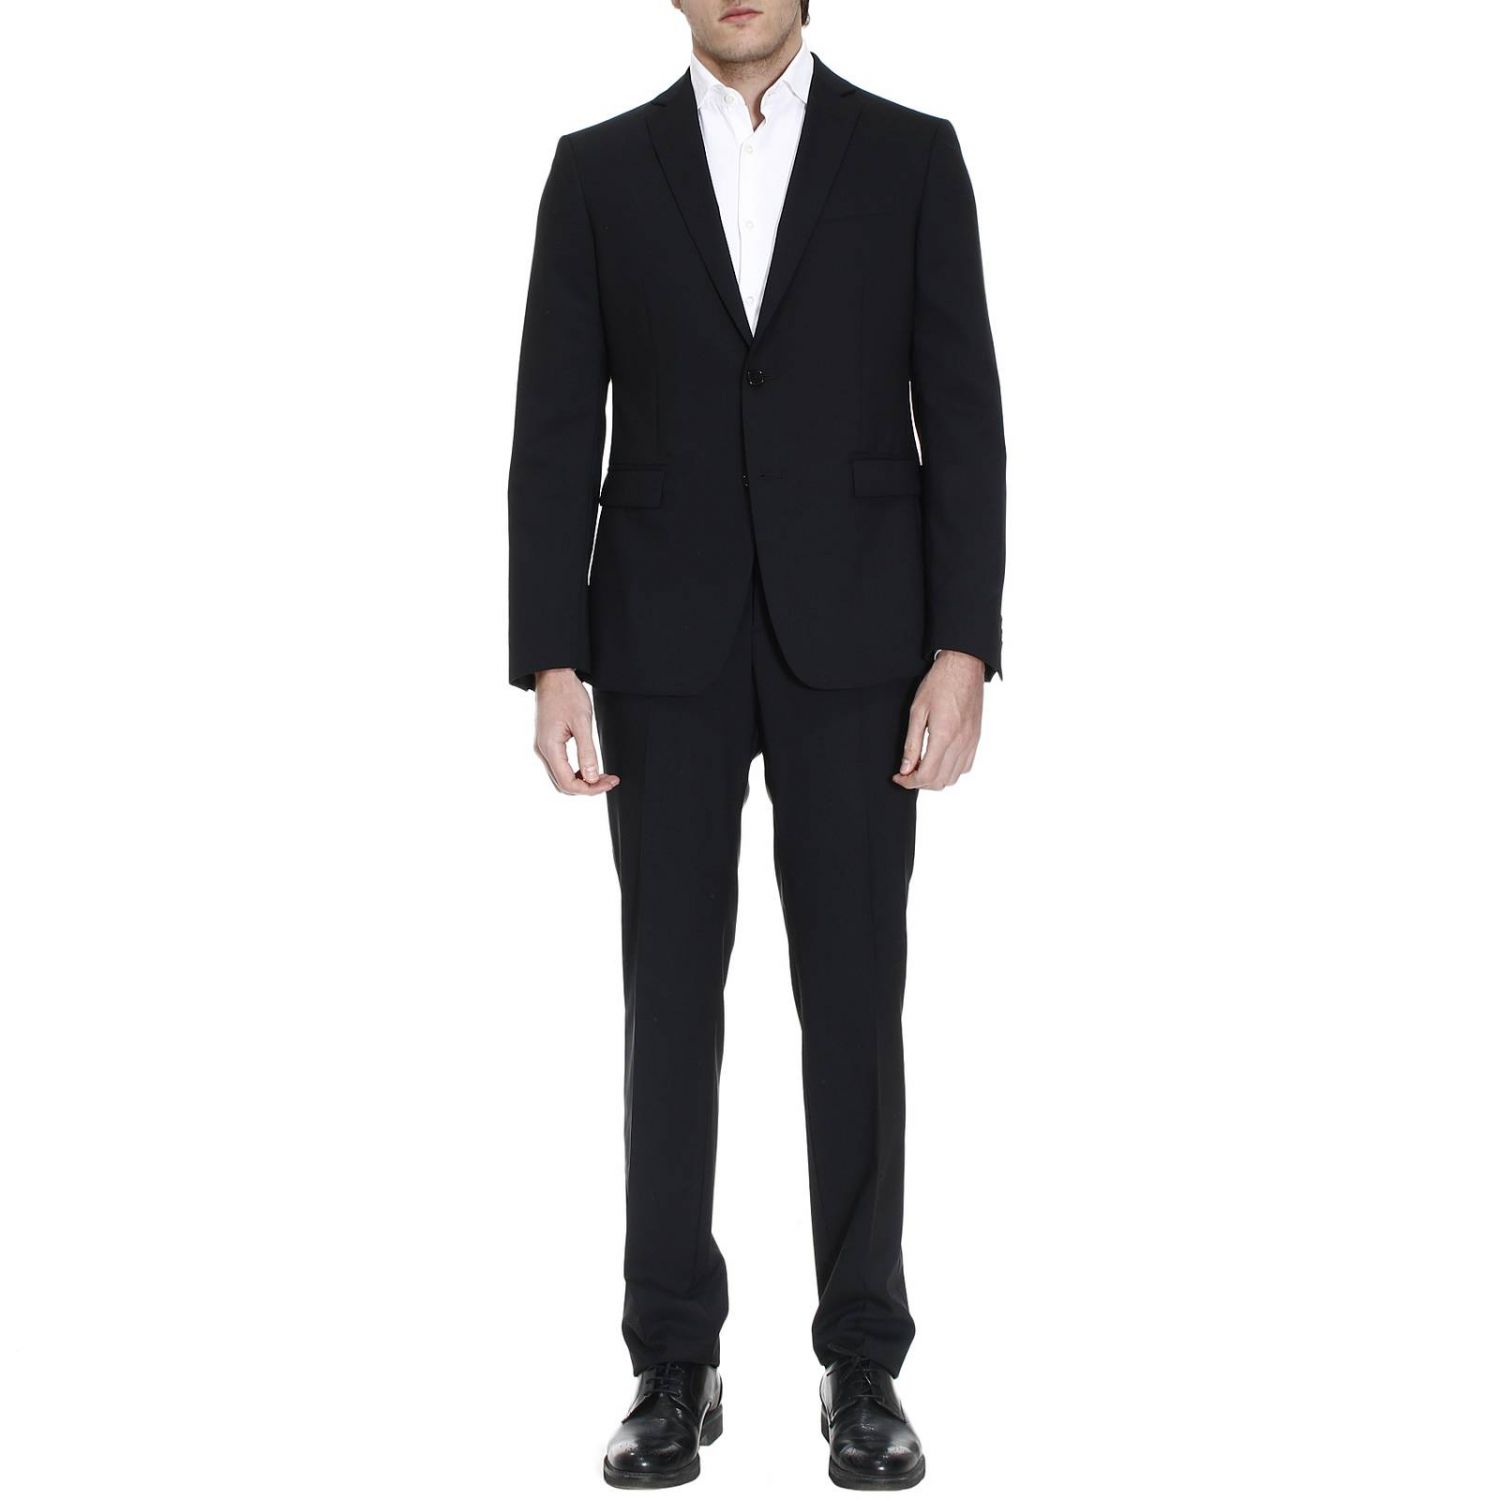 Versace Collection Outlet: Suits men | Suit Versace Collection Men ...